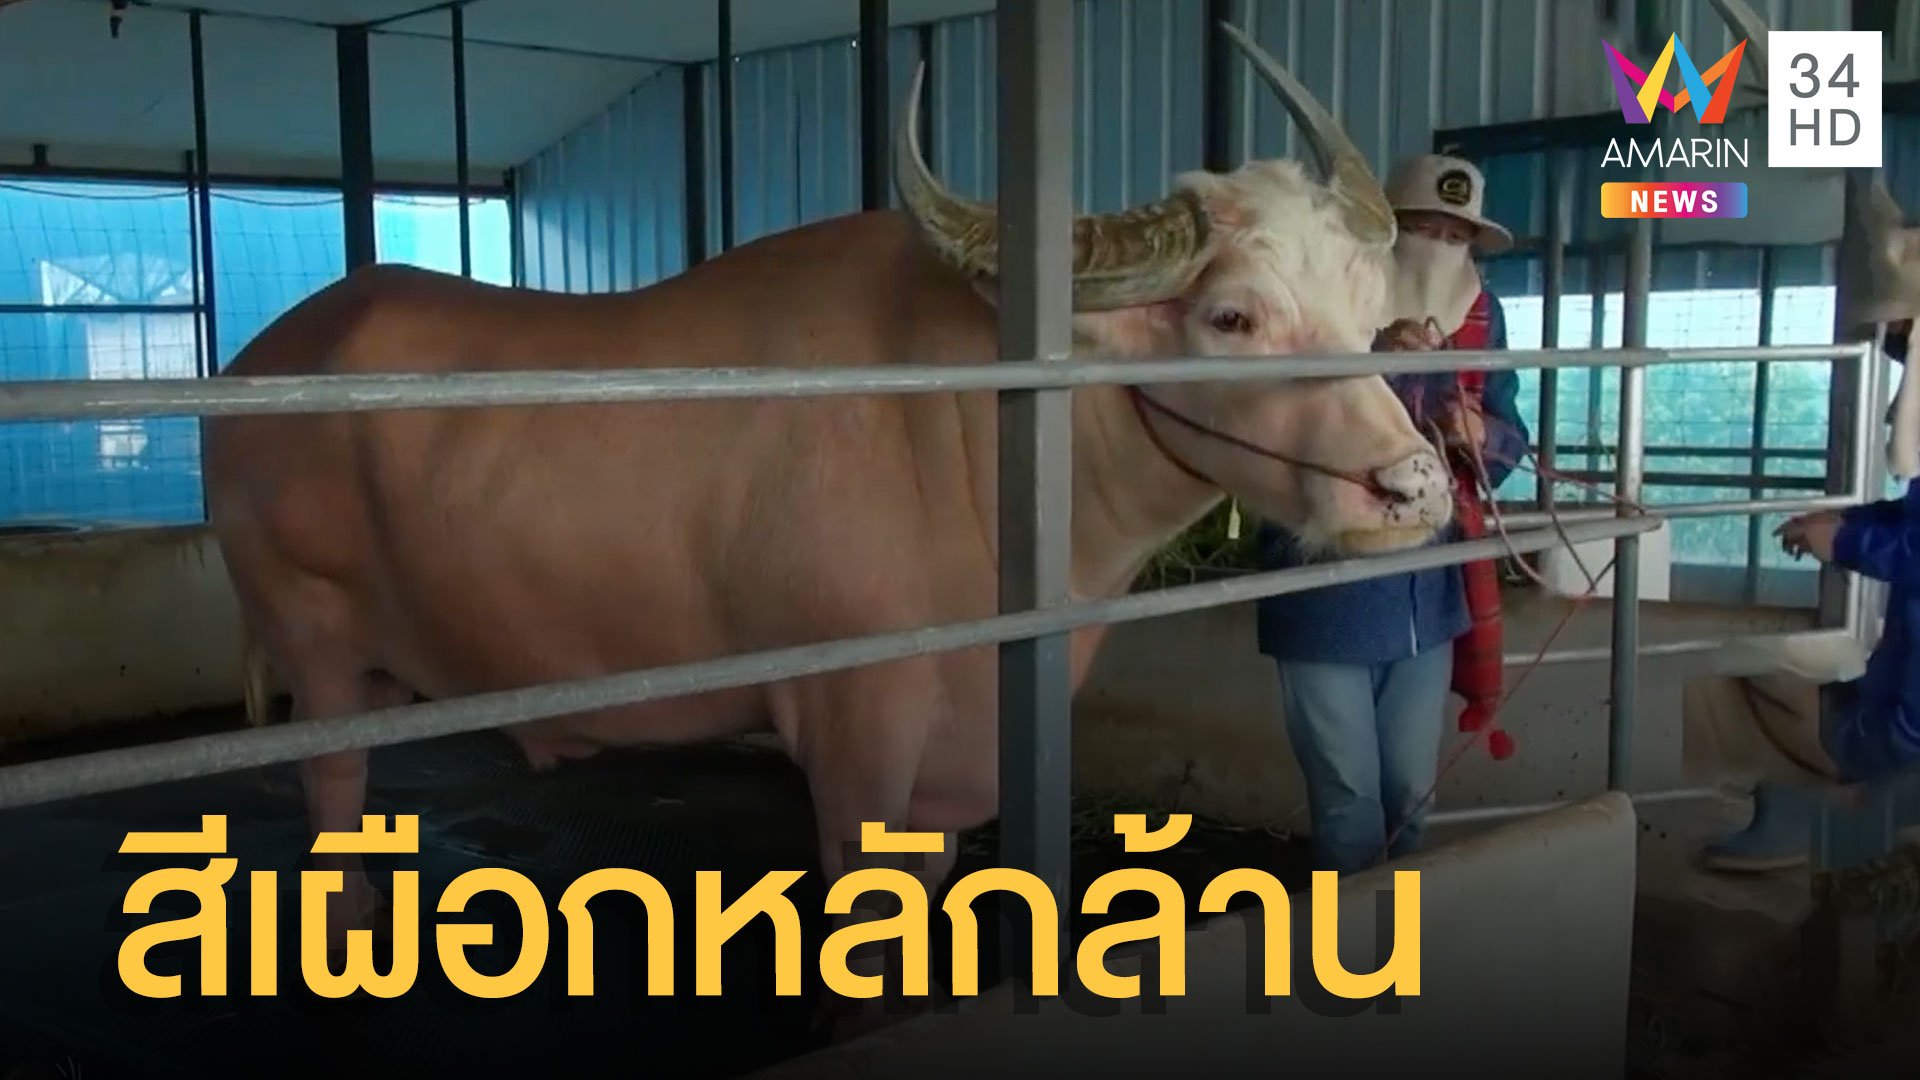 ควายไทยสีเผือก มูลค่าหลายล้านตัวเดียวในโลก | ข่าวเที่ยงอมรินทร์ | 21 มี.ค. 65 | AMARIN TVHD34